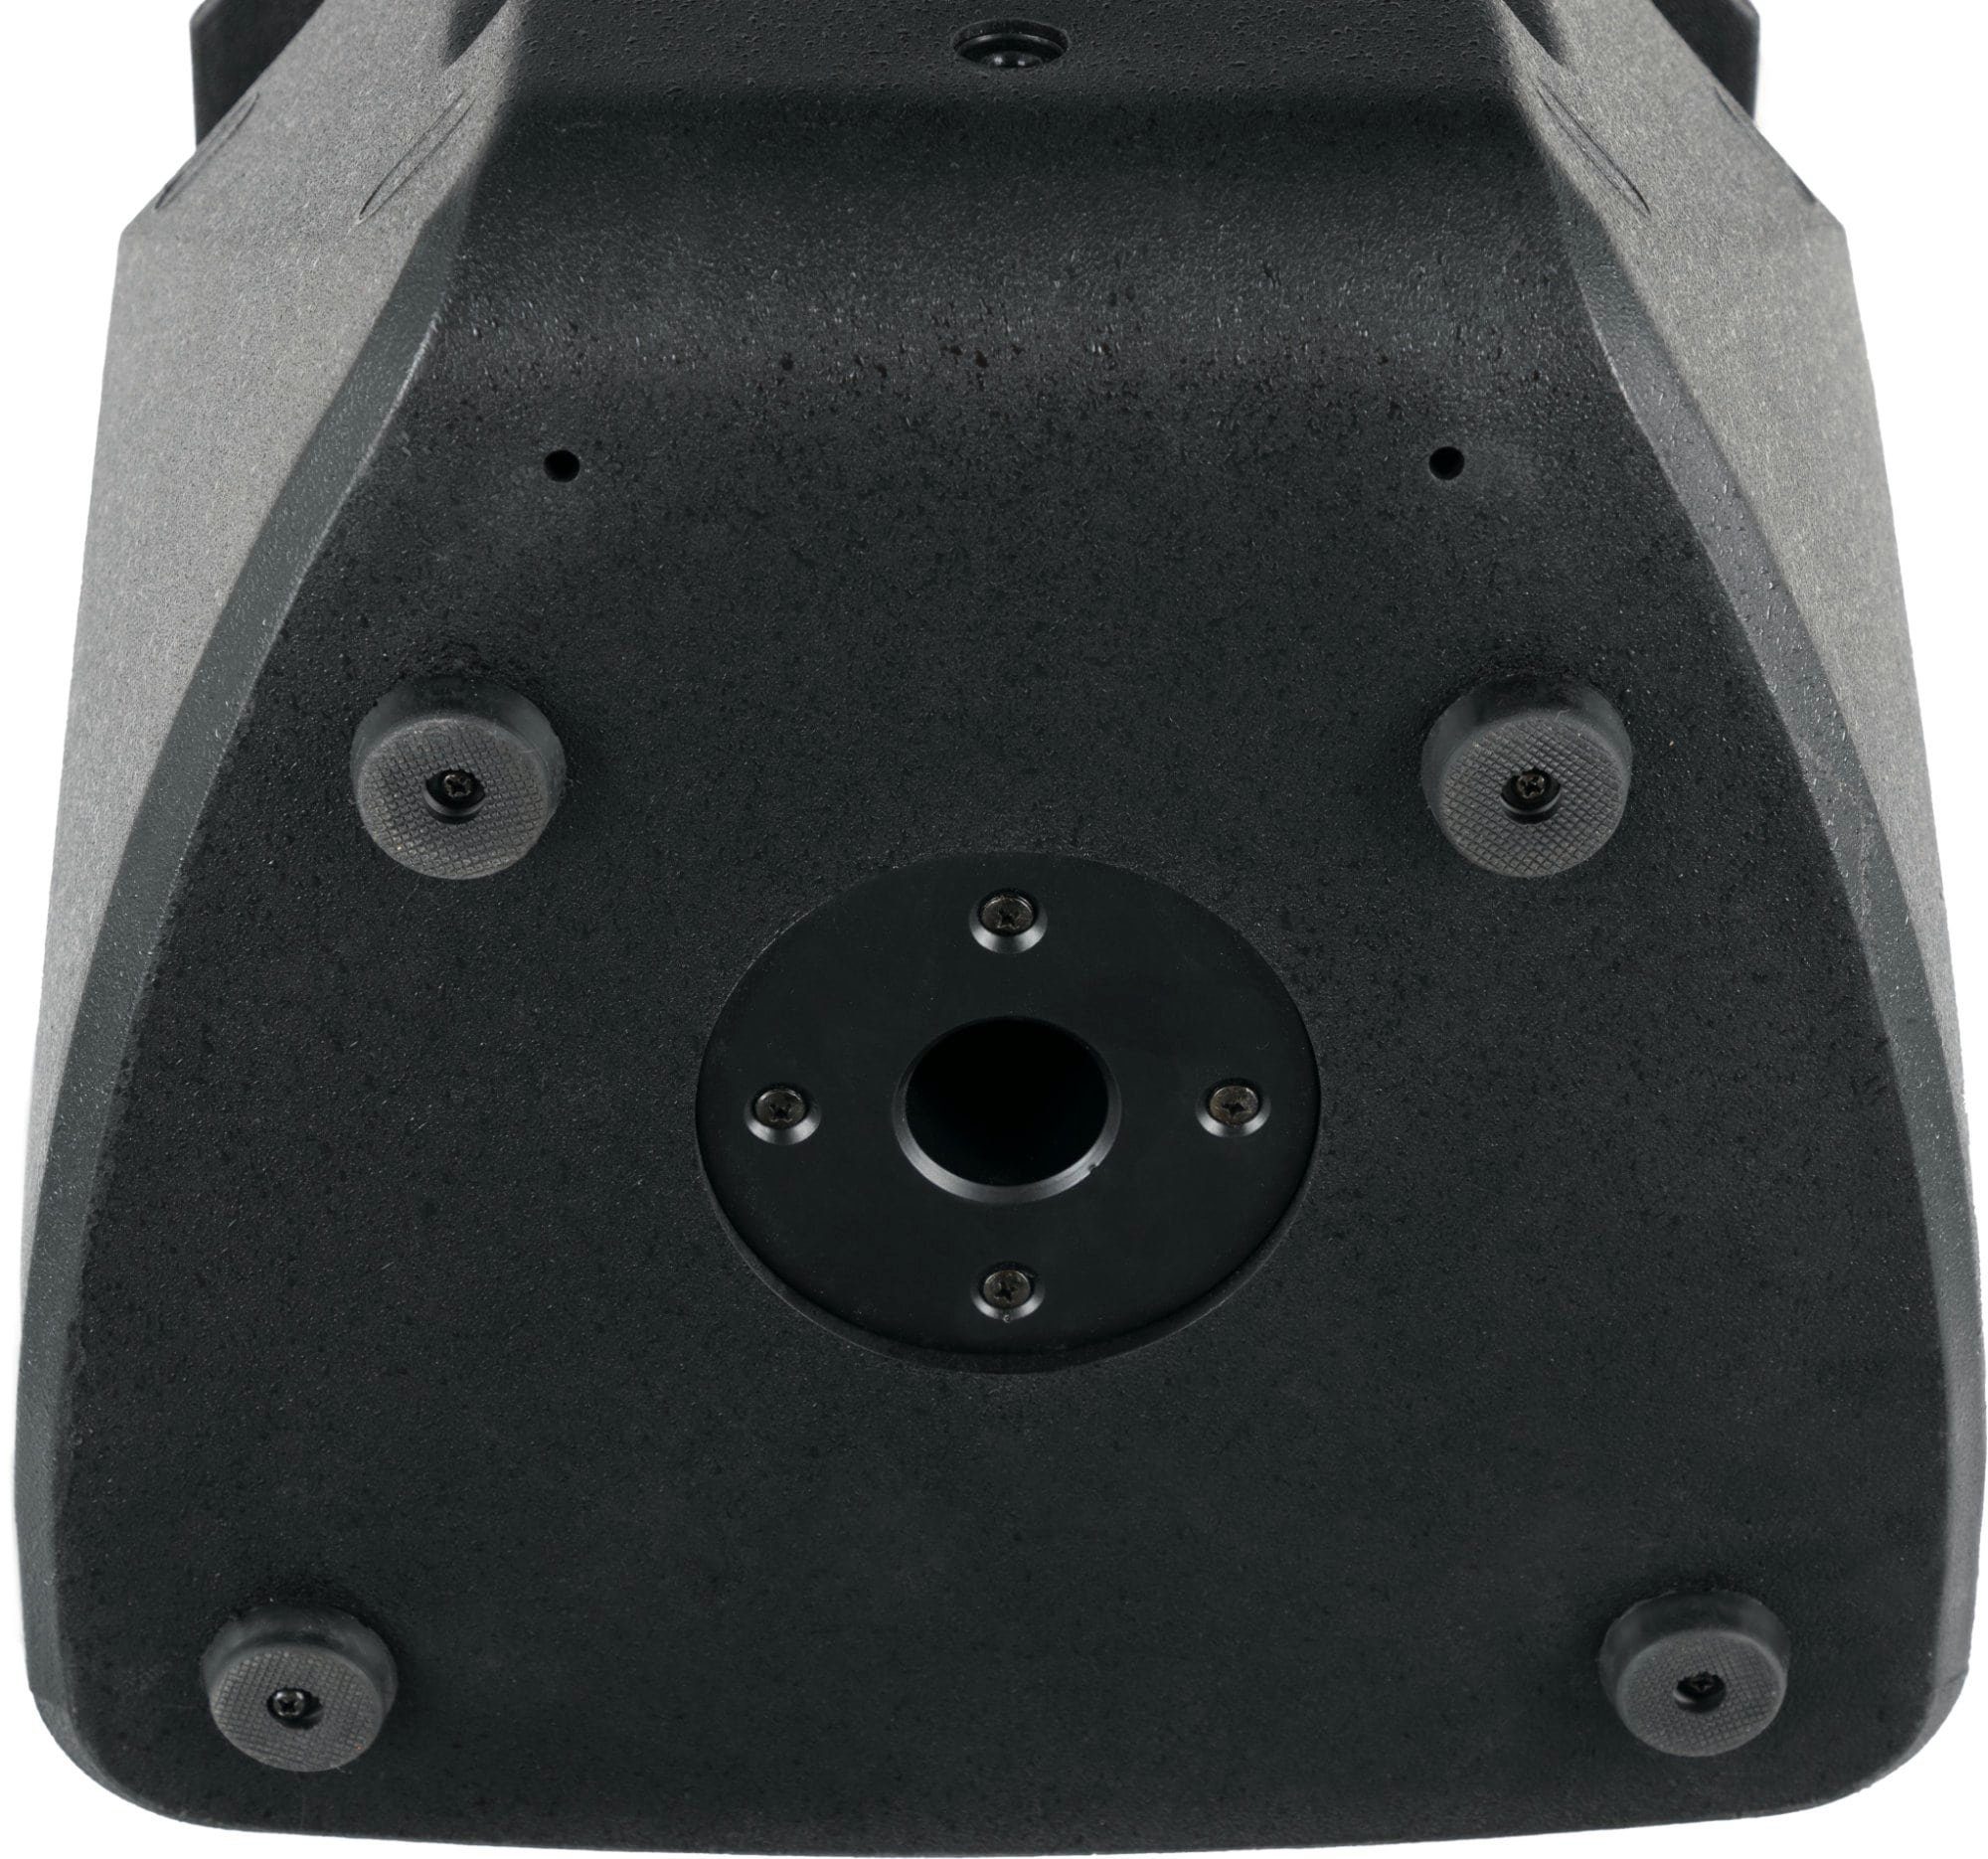 2-Wege Lautsprecher Stativen im mit Pronomic Box Passivboxen Tragegriffe Set MP passive C-208 W, & Multifunktionsgehäuse 2 aus samt 8" Stahl) (150 Boxenstative